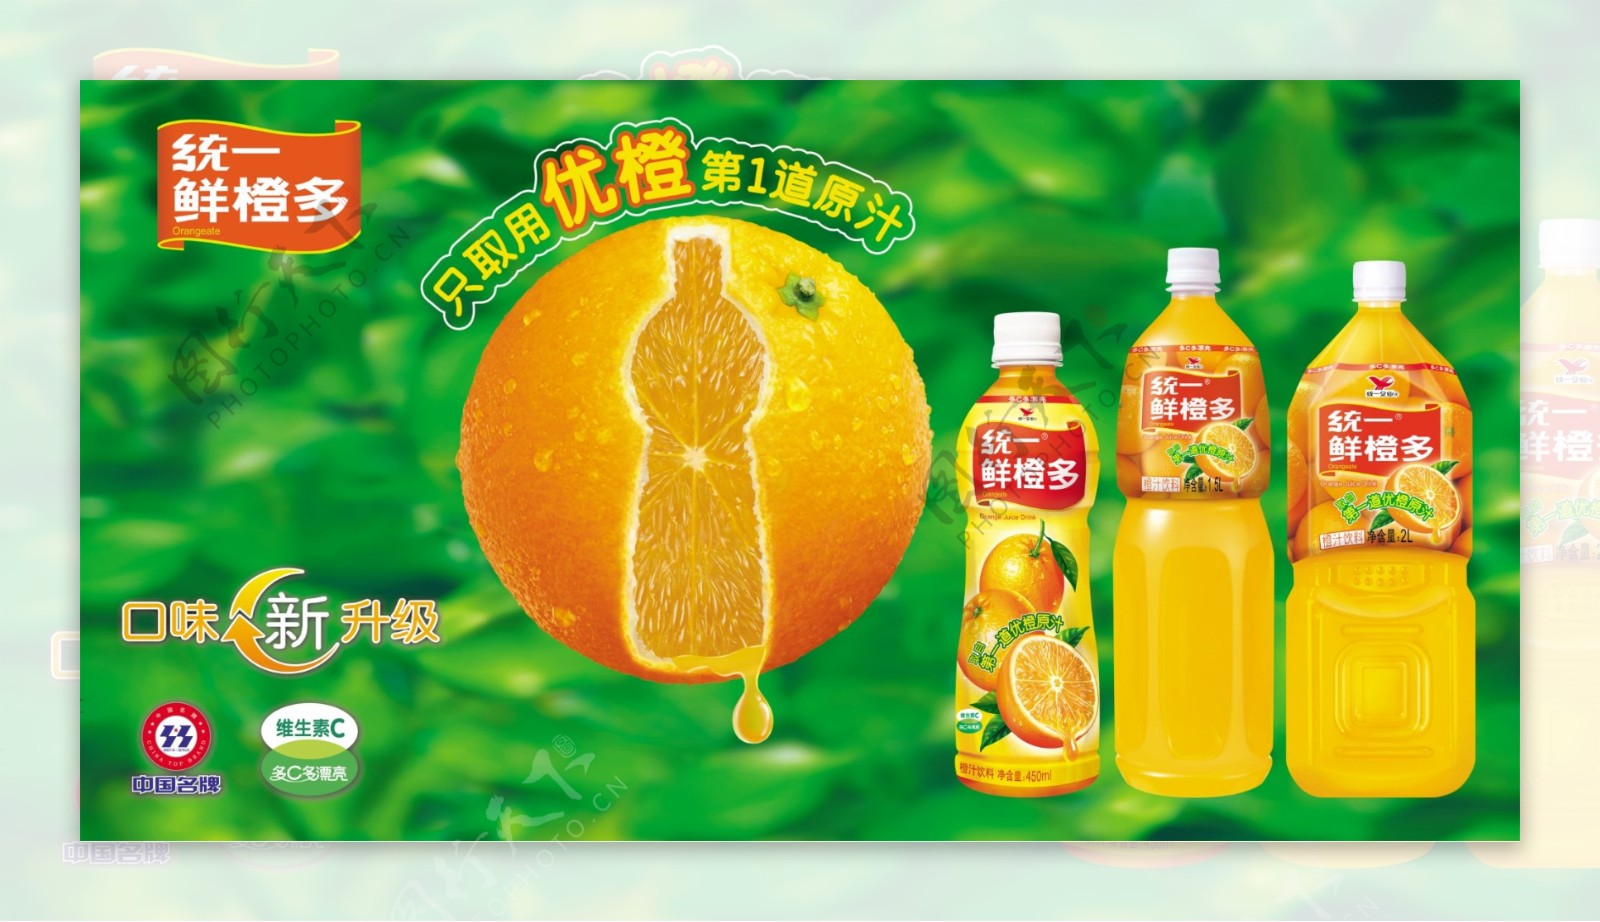 统一鲜橙多CNY系列包装设计 - 普象网